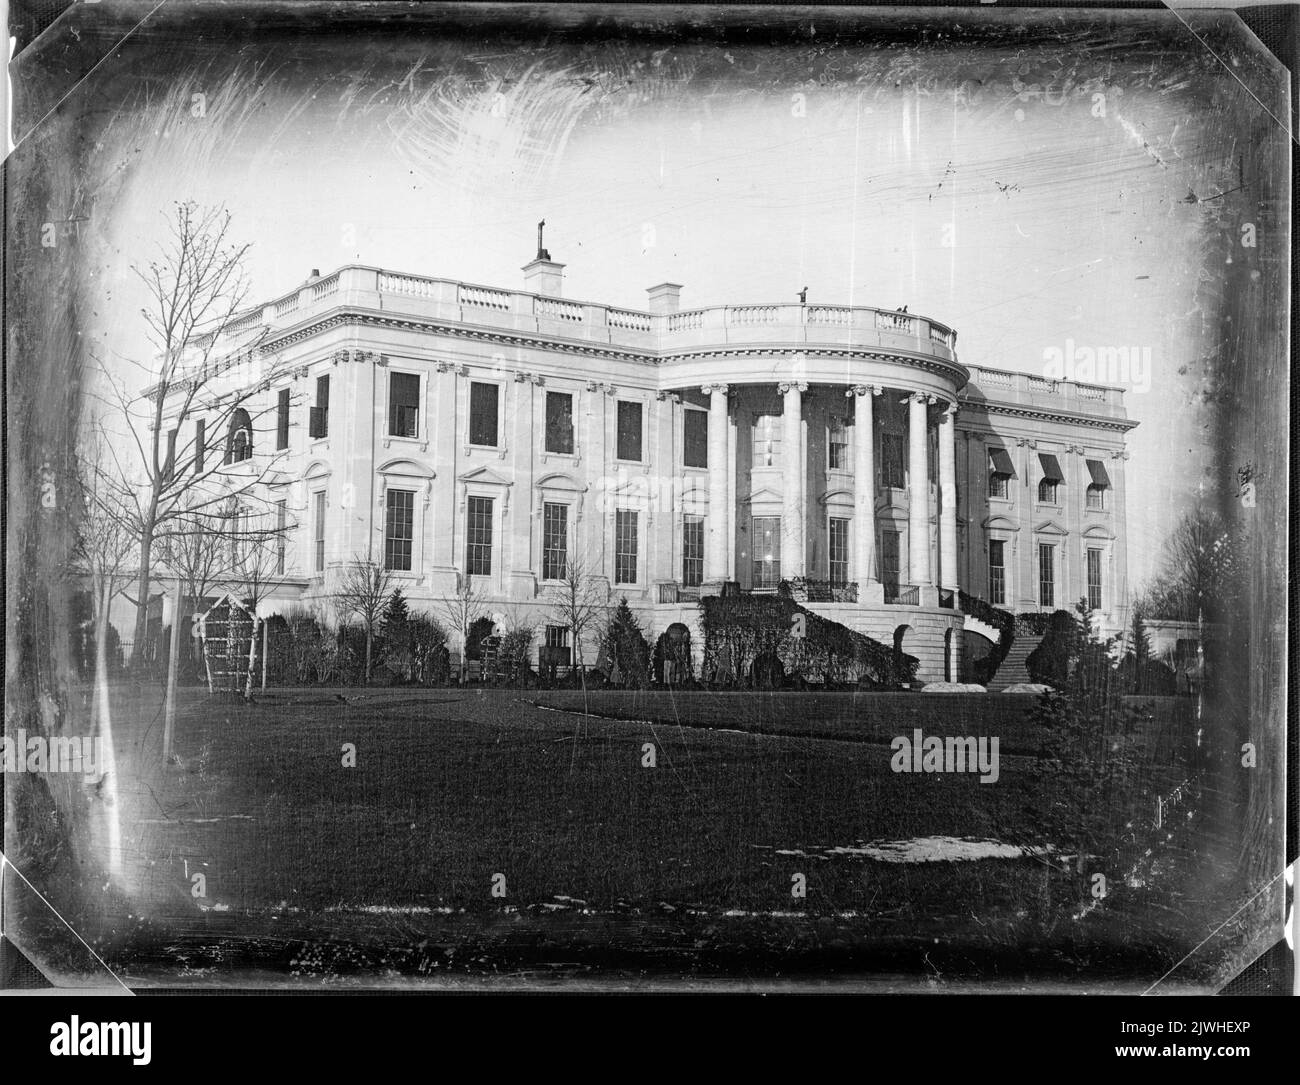 Photo de la Maison Blanche de type daguerrotype prise en 1846 Banque D'Images